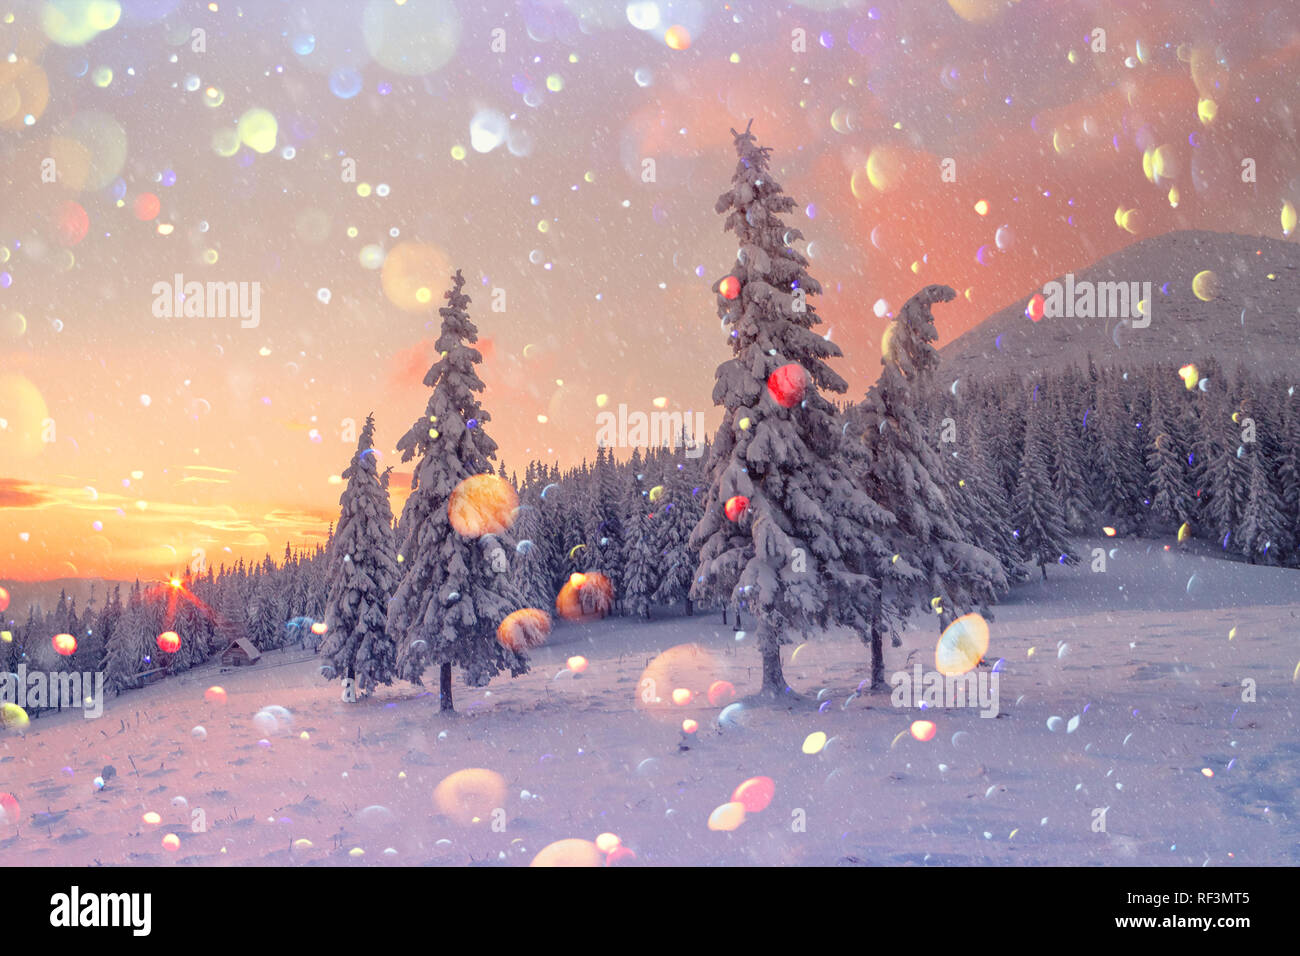 Fantastische orange Winterlandschaft in Snowy Mountains glühende durch Sonnenlicht. Dramatische winterliche Szene mit verschneiten Bäumen. DOF bokeh Licht postprocessing Effekt. Weihnachten collage Stockfoto